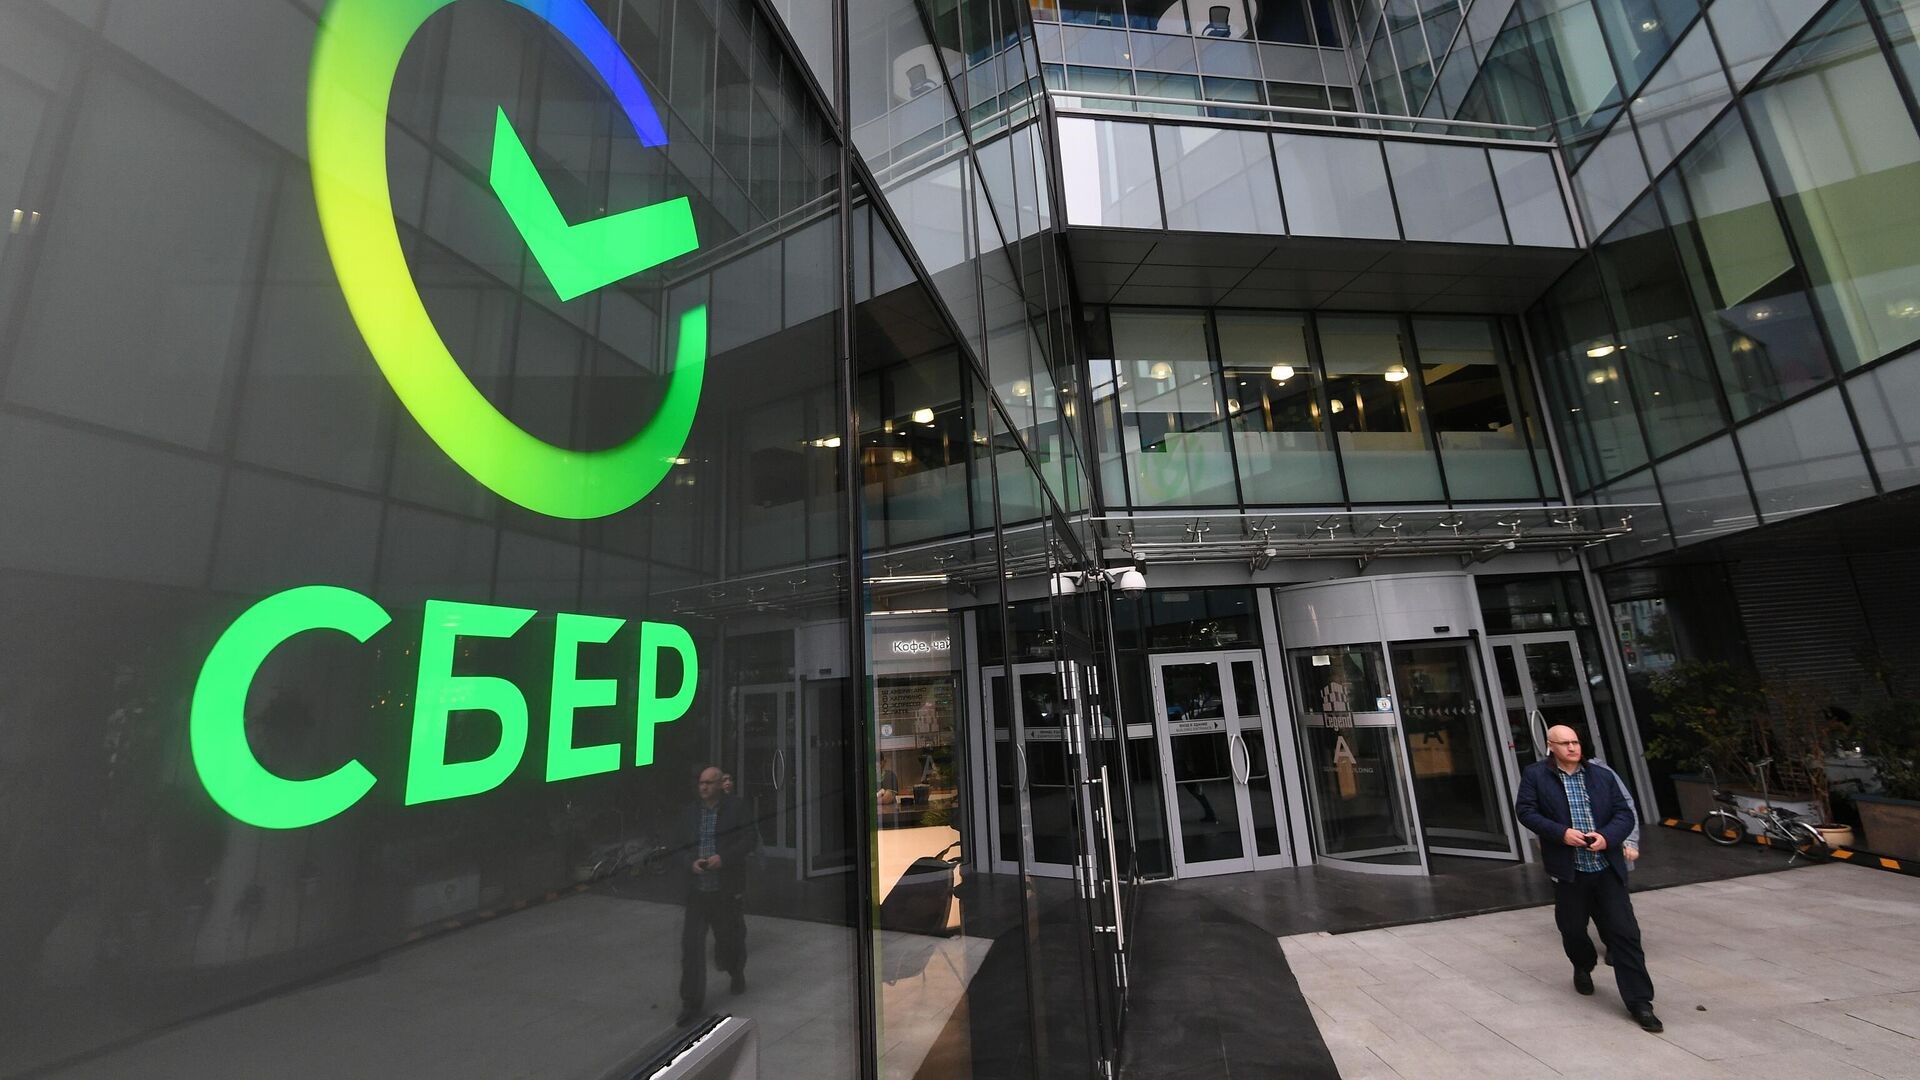 ООО Корпорация «Дальтехимпорт» подписала Договор на замену 22 лифтов в главном здании Сбербанка.